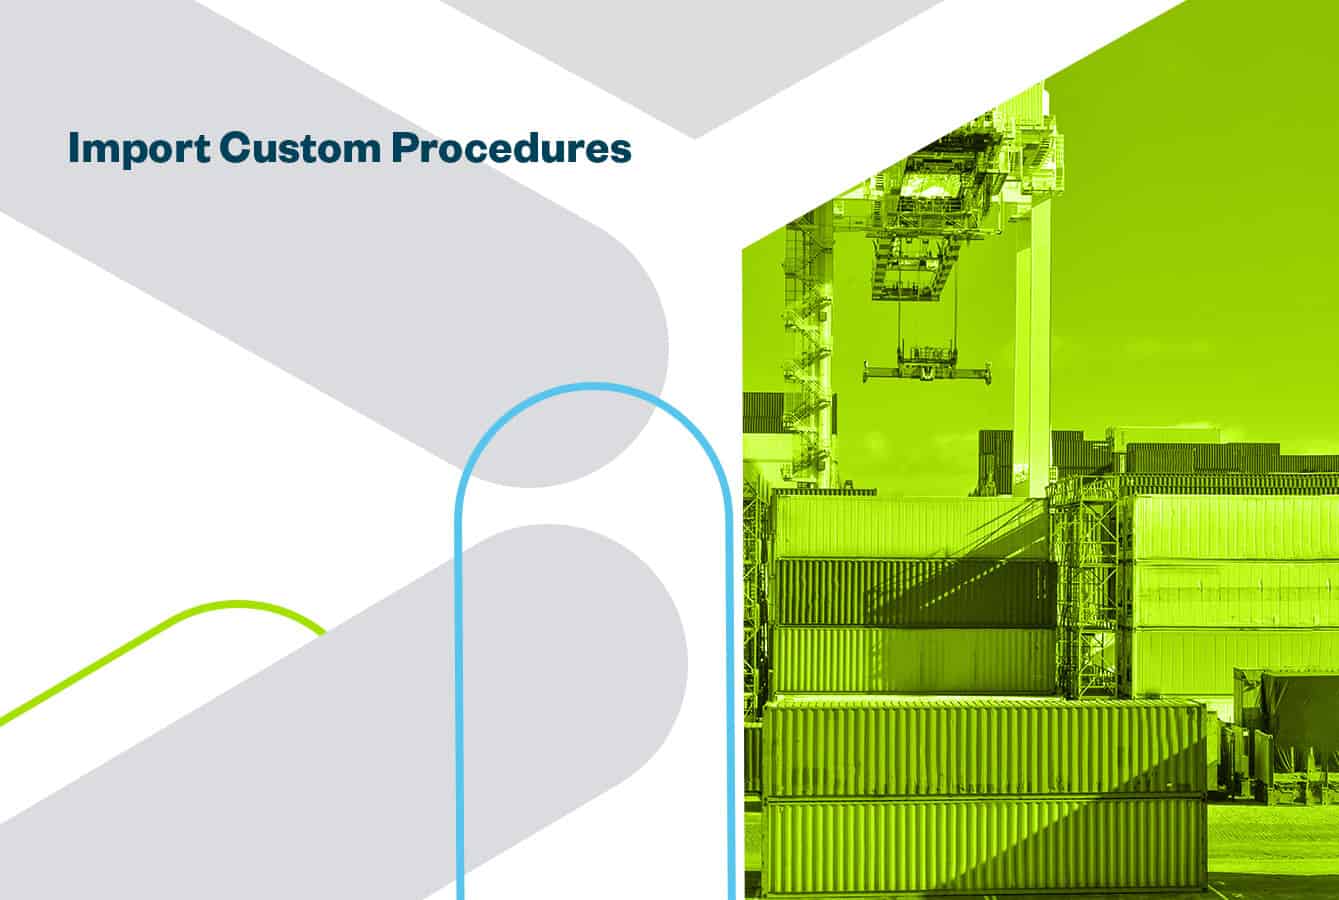 Import Customs Procedures